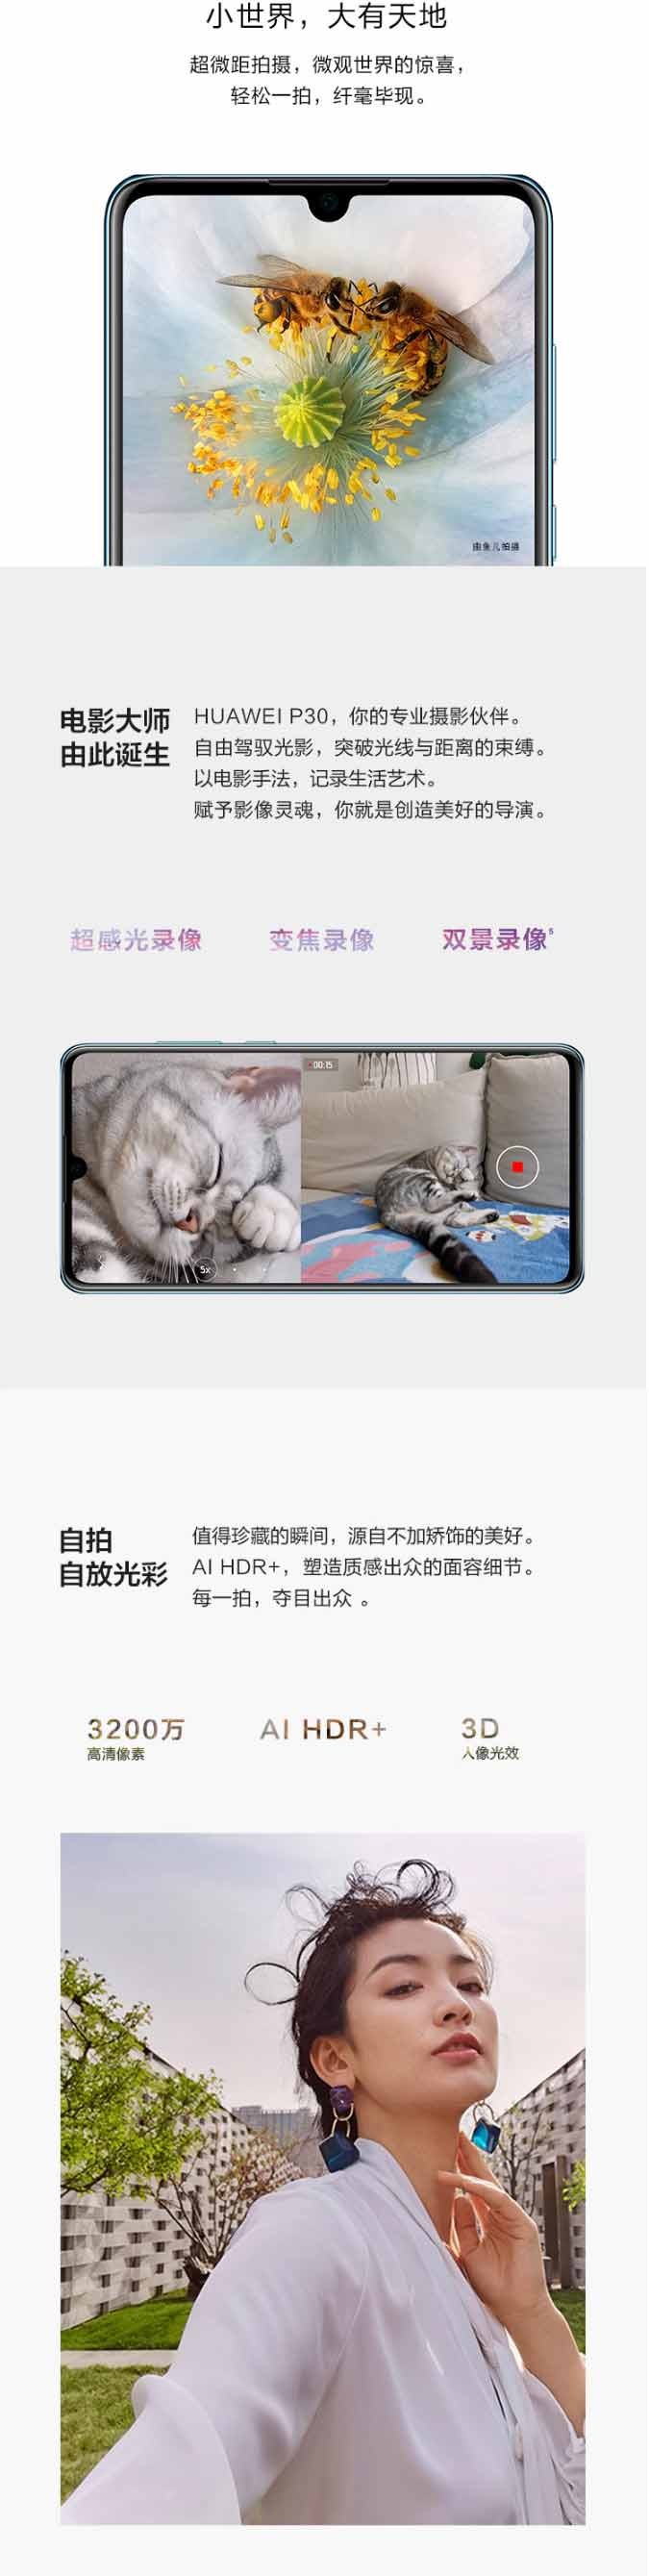 华为 HUAWEI P30 超感光徕卡三摄麒麟全面屏屏内指纹版手机6g+128g